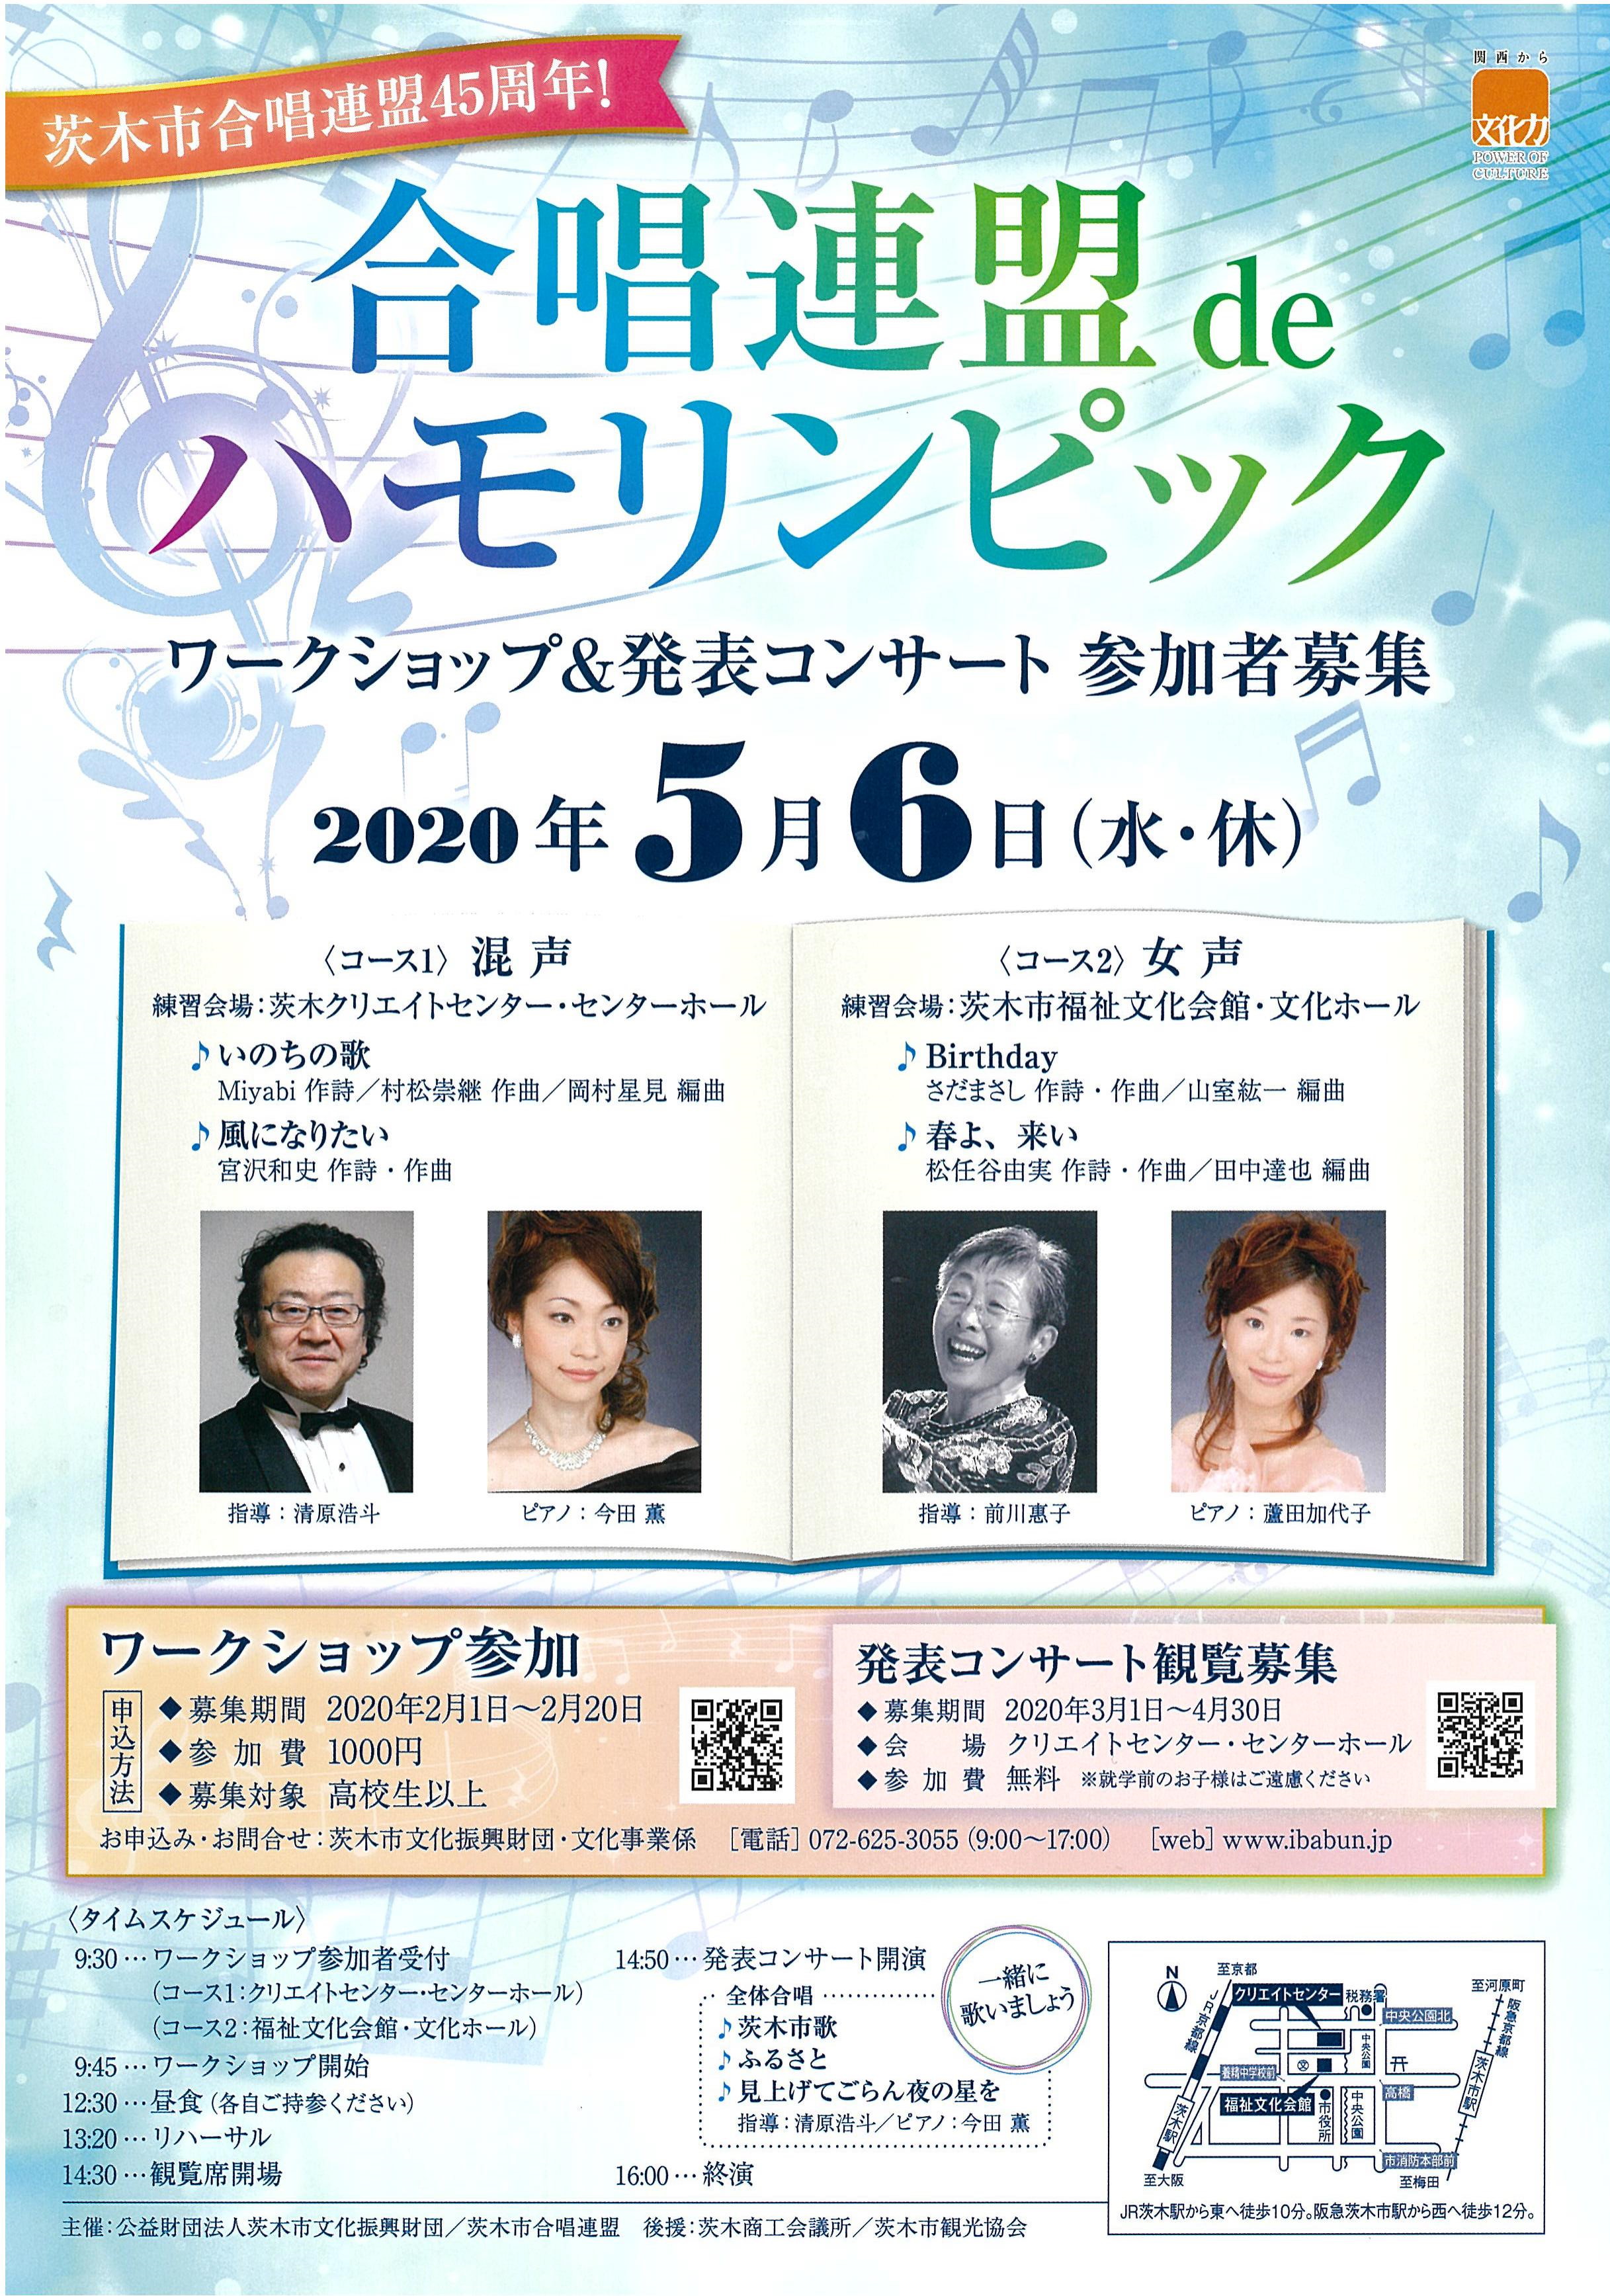 【中止】振替公演・合唱連盟 de ハモリンピック2020